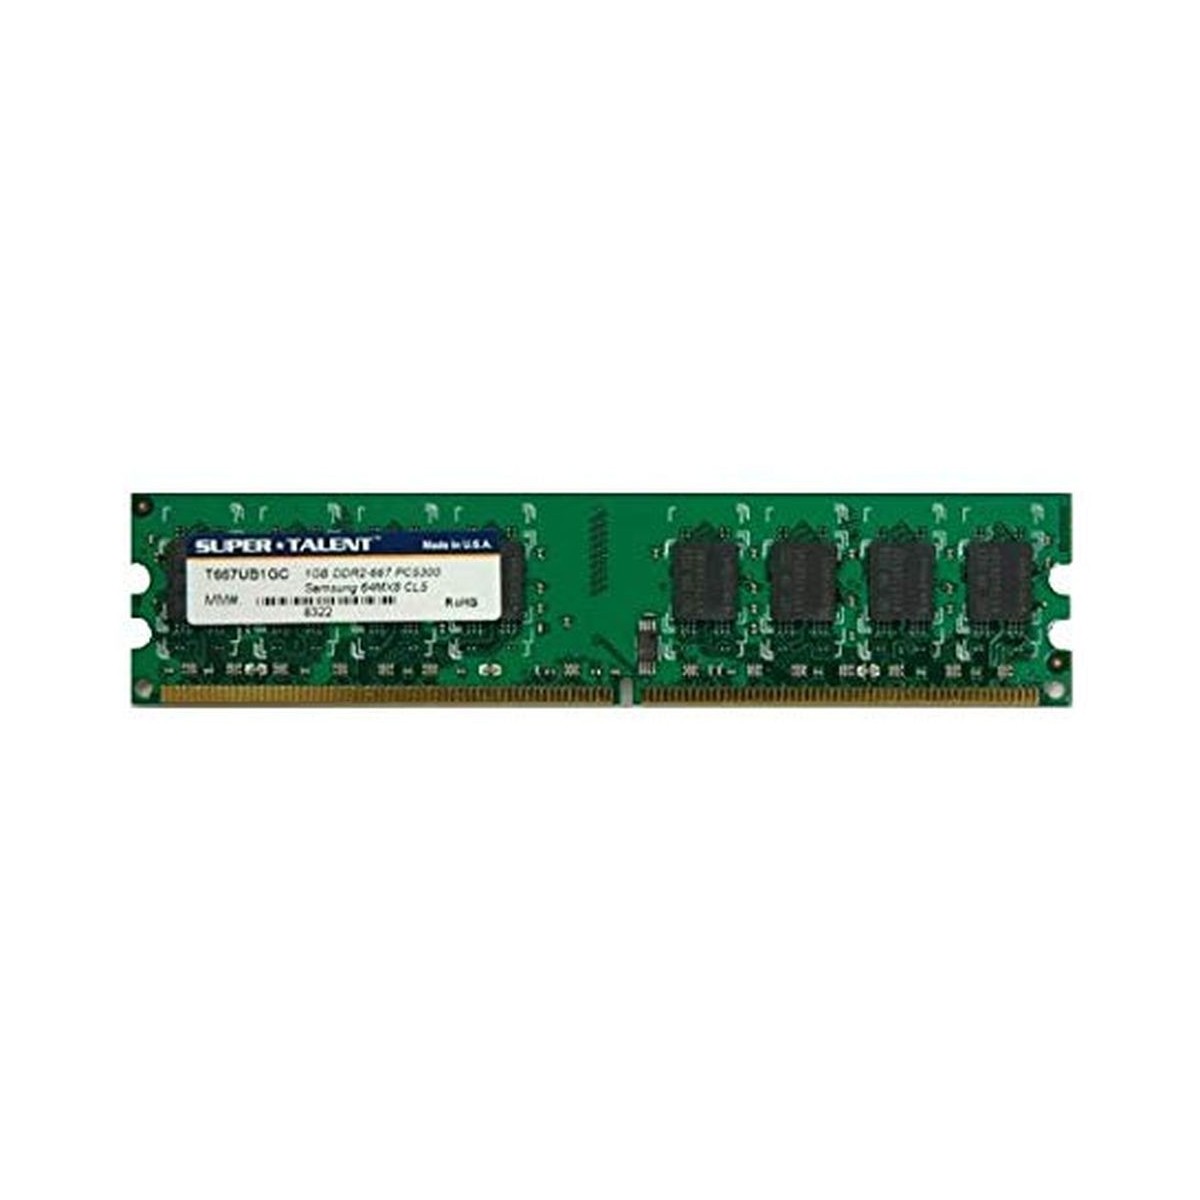 SUPER TALENT 1GB 64x8 DDR2-667 PC5300 T667UB1GC